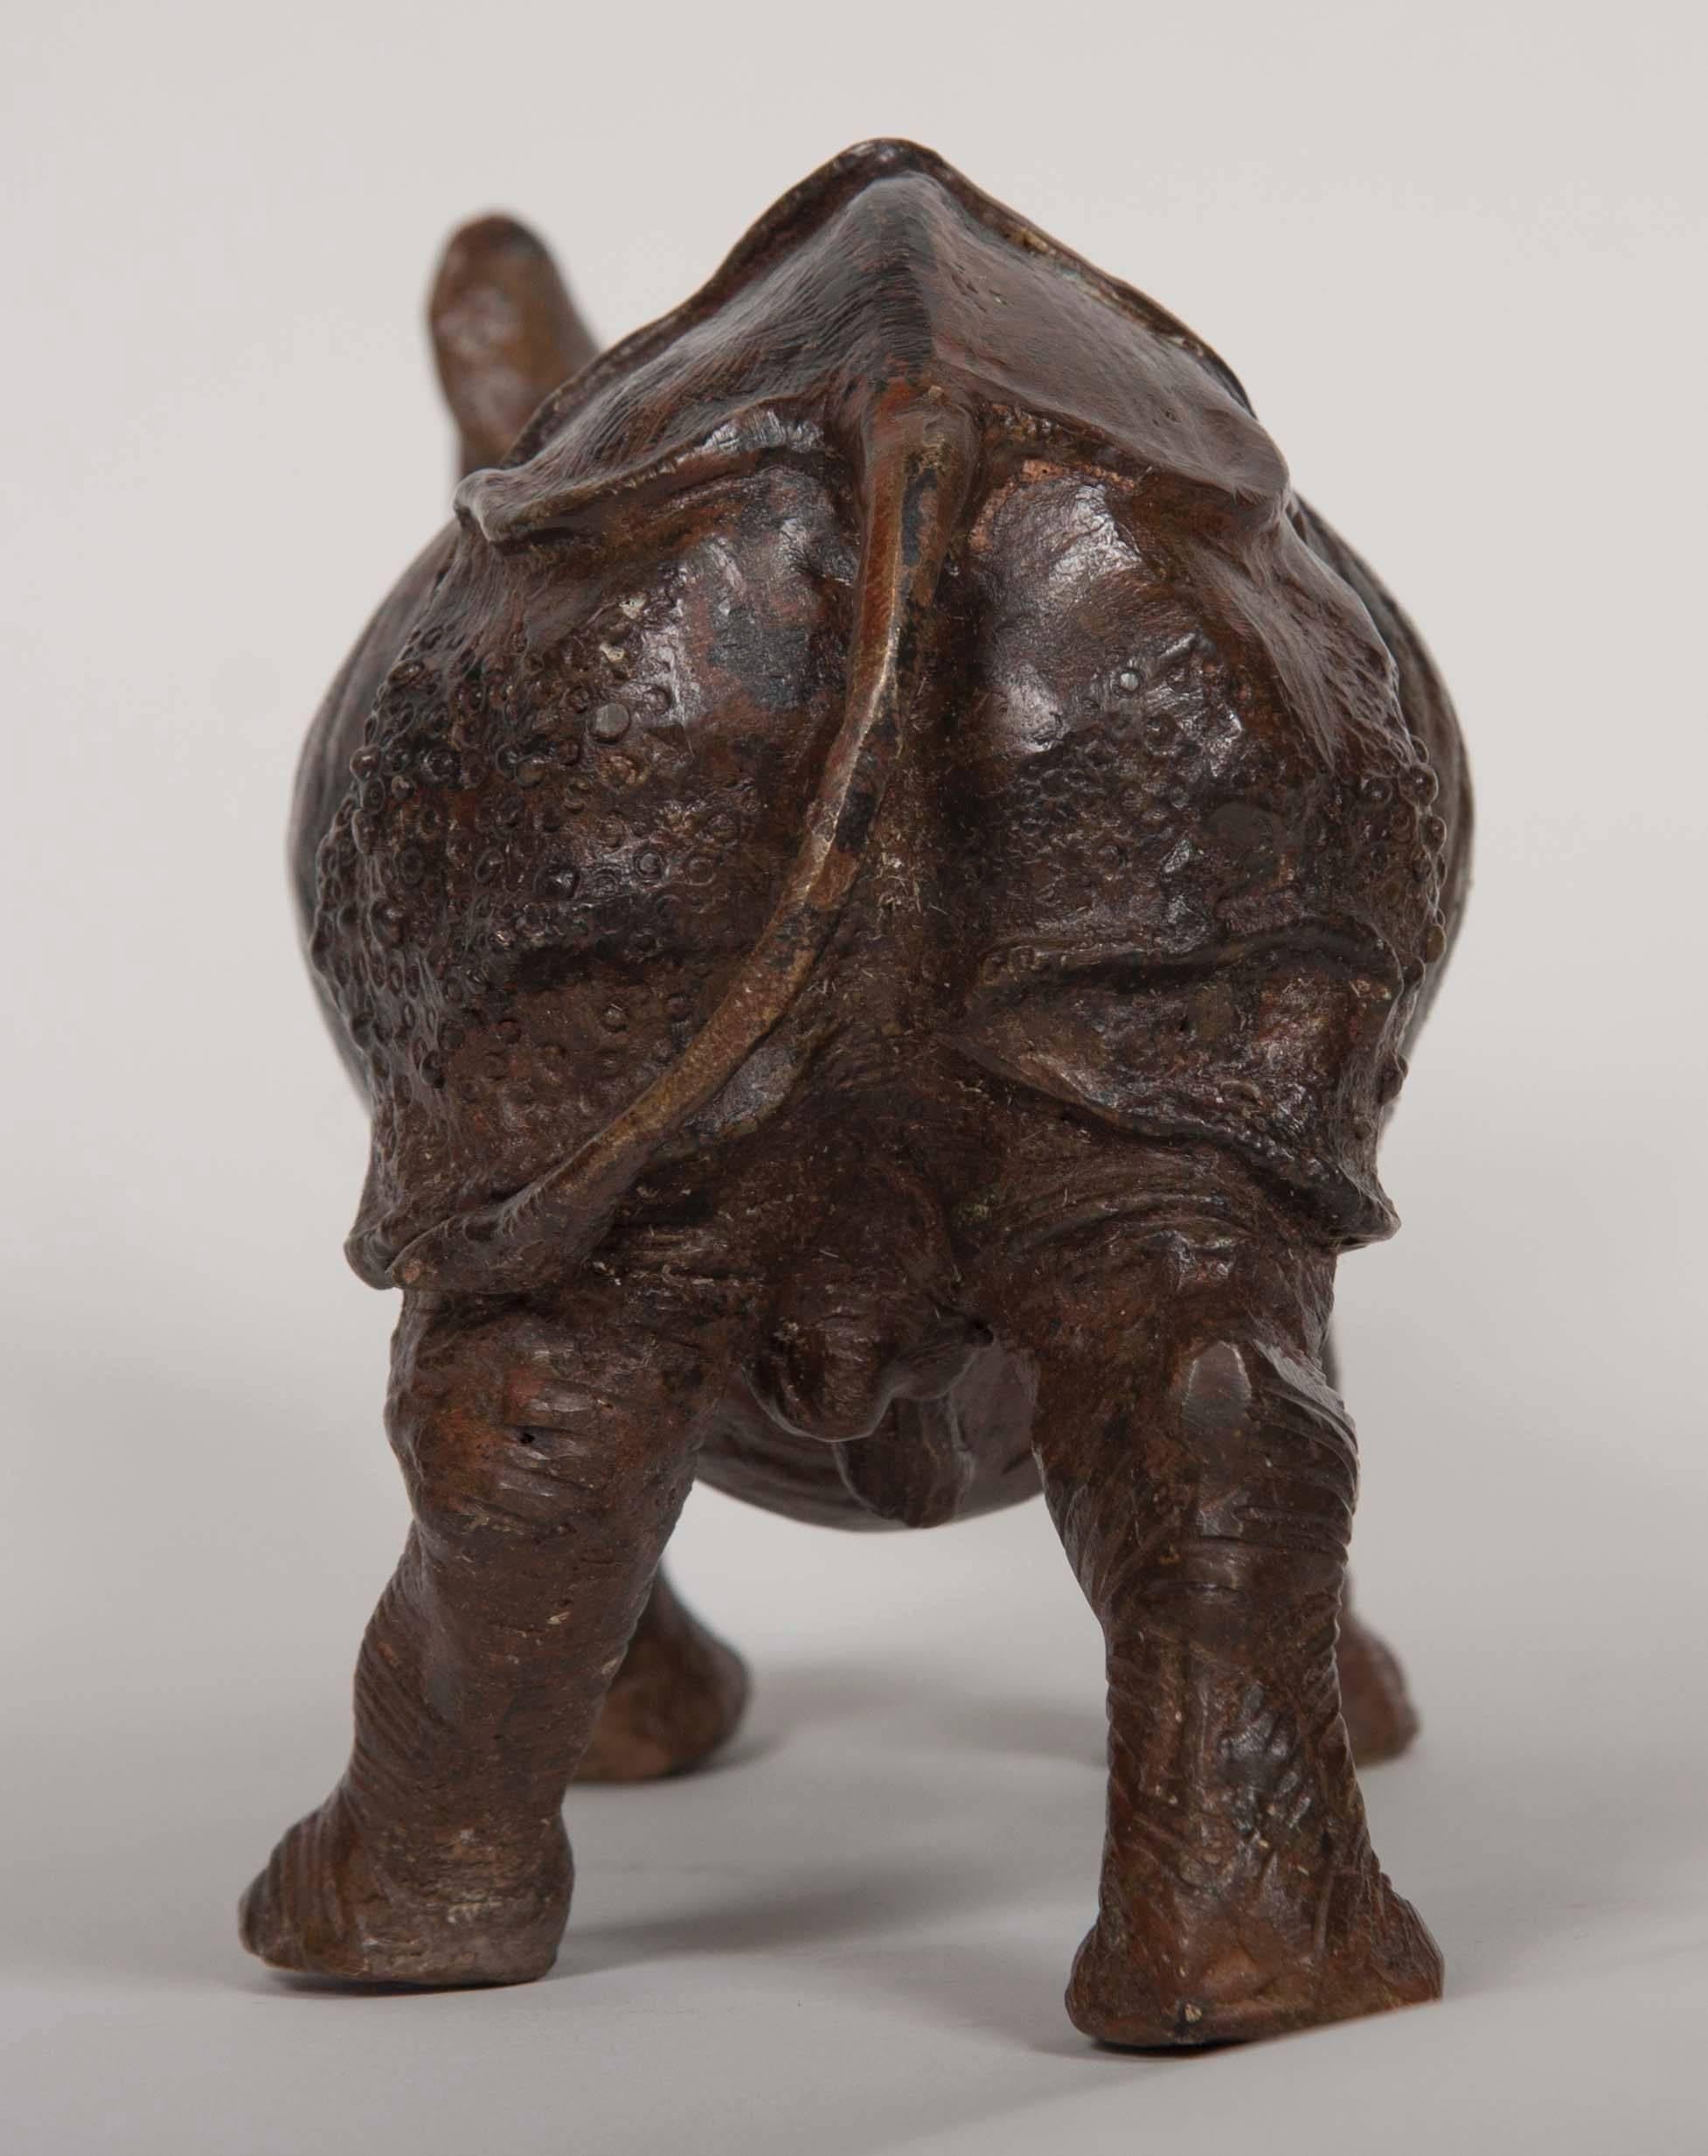 Un bronze japonais de la fin du 19ème / début du 20ème siècle représentant un rhinocéros avec une patine magnifique.